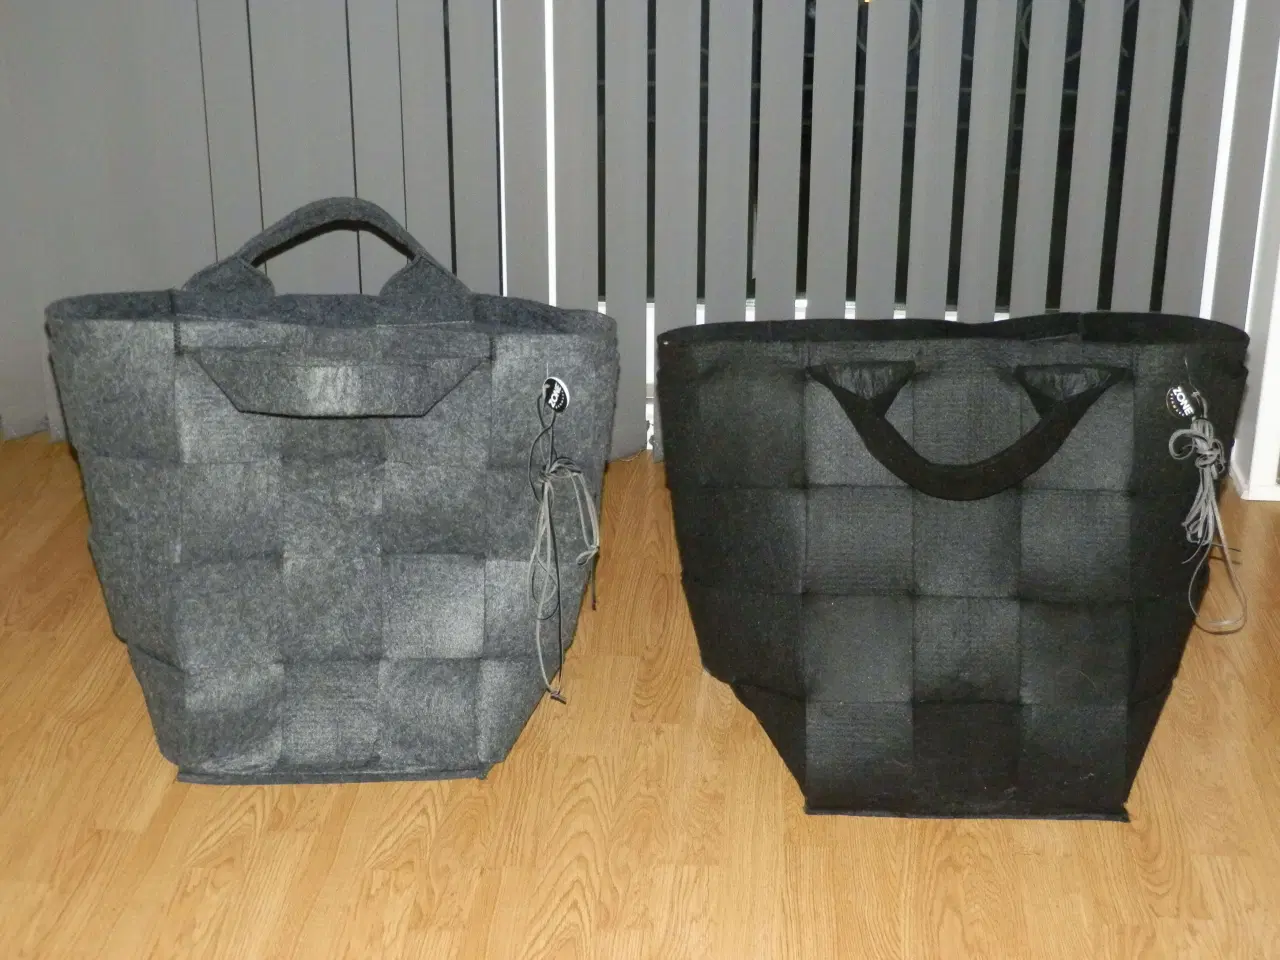 Billede 1 - To ZONE vasketøjsposer i grå og sort 